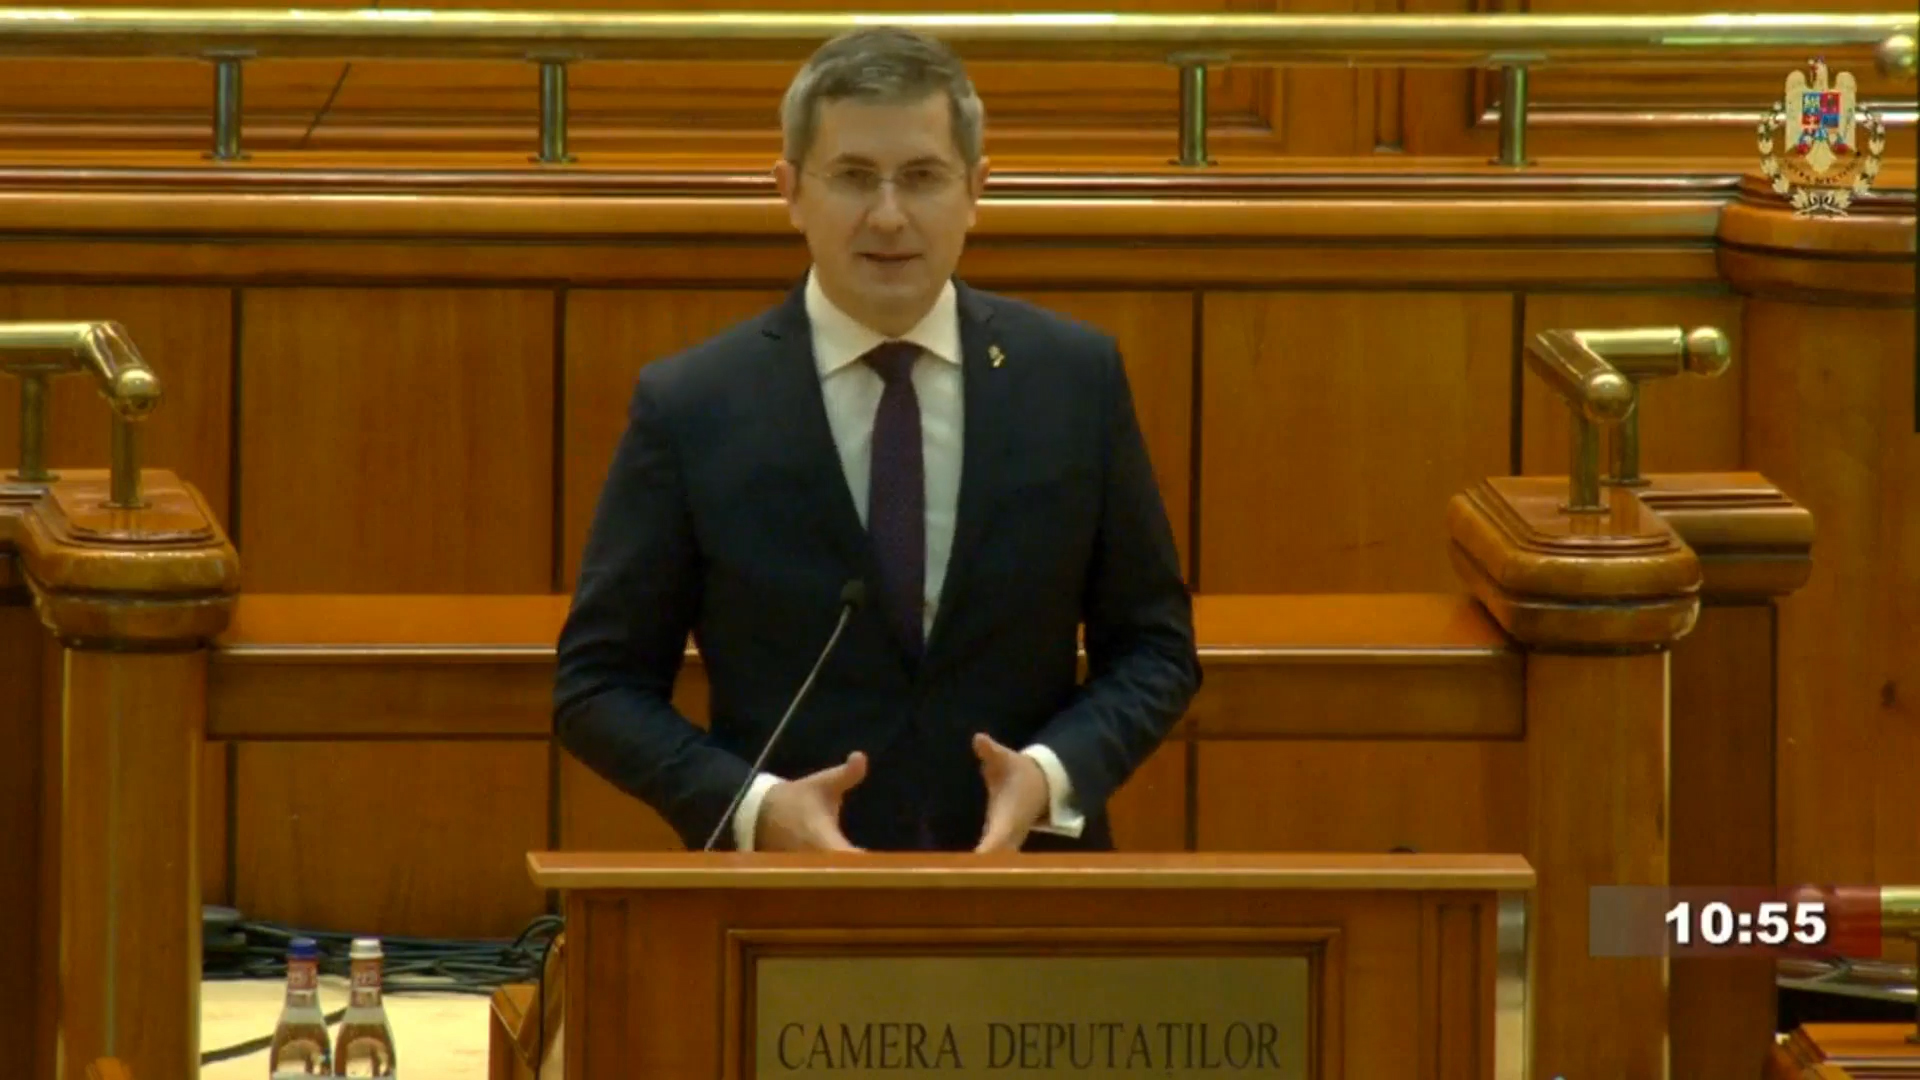 VIDEO Dan Barna: Aţi reuşit, domnule Ciolacu, ceea ce nici Ion Iliescu nu a fost capabil să facă, aţi scos PNL din istorie şi l-aţi pus în buzunarul de la piept al PSD